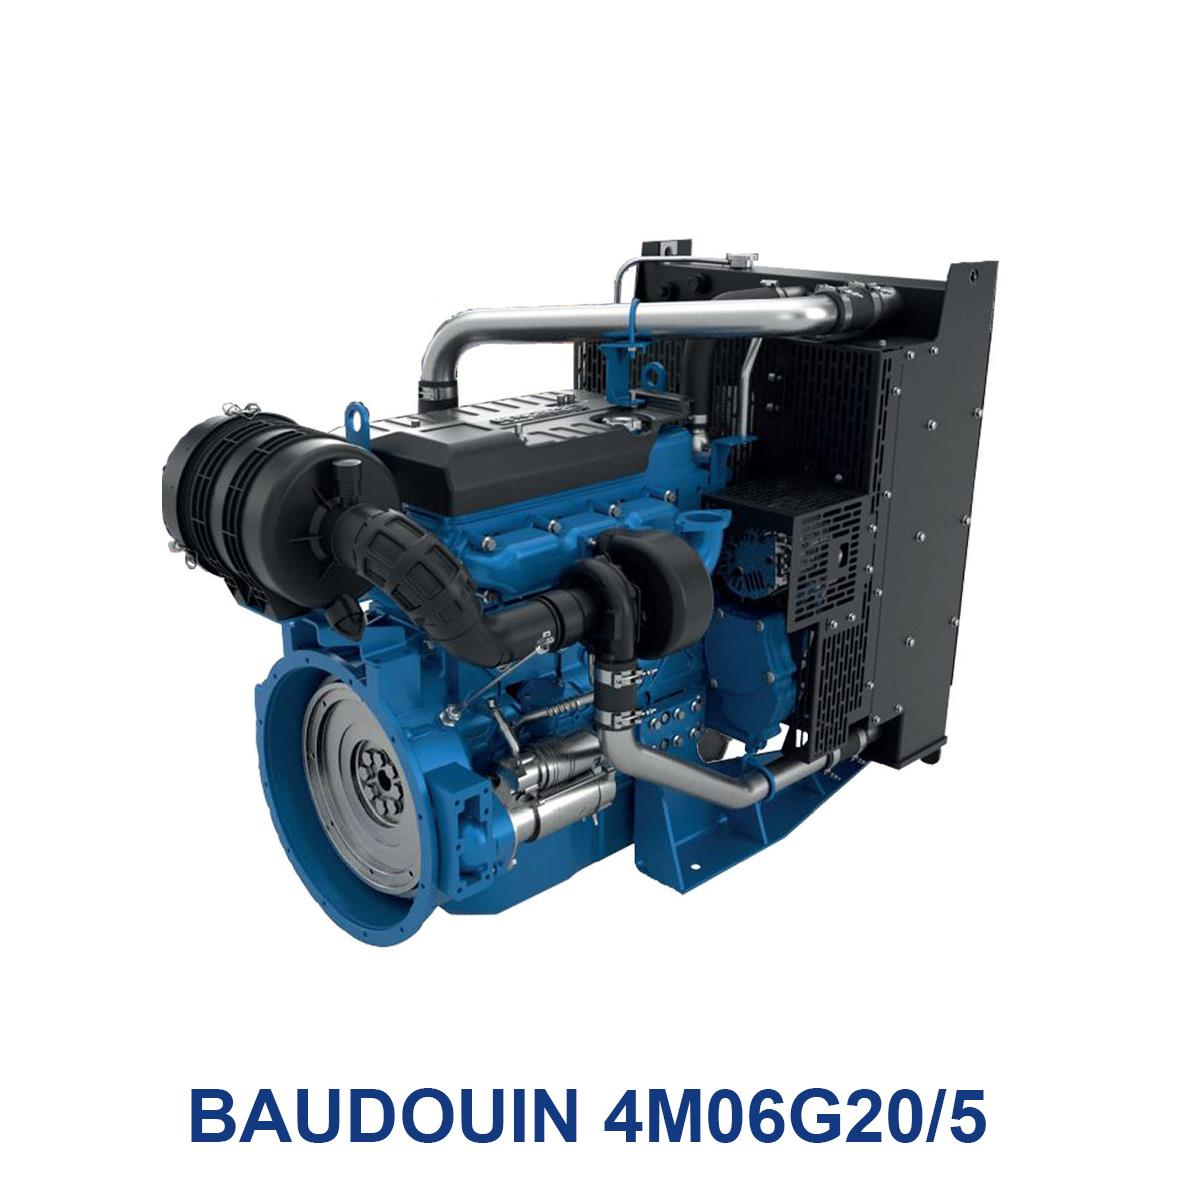 BAUDOUIN-4M06G20_5